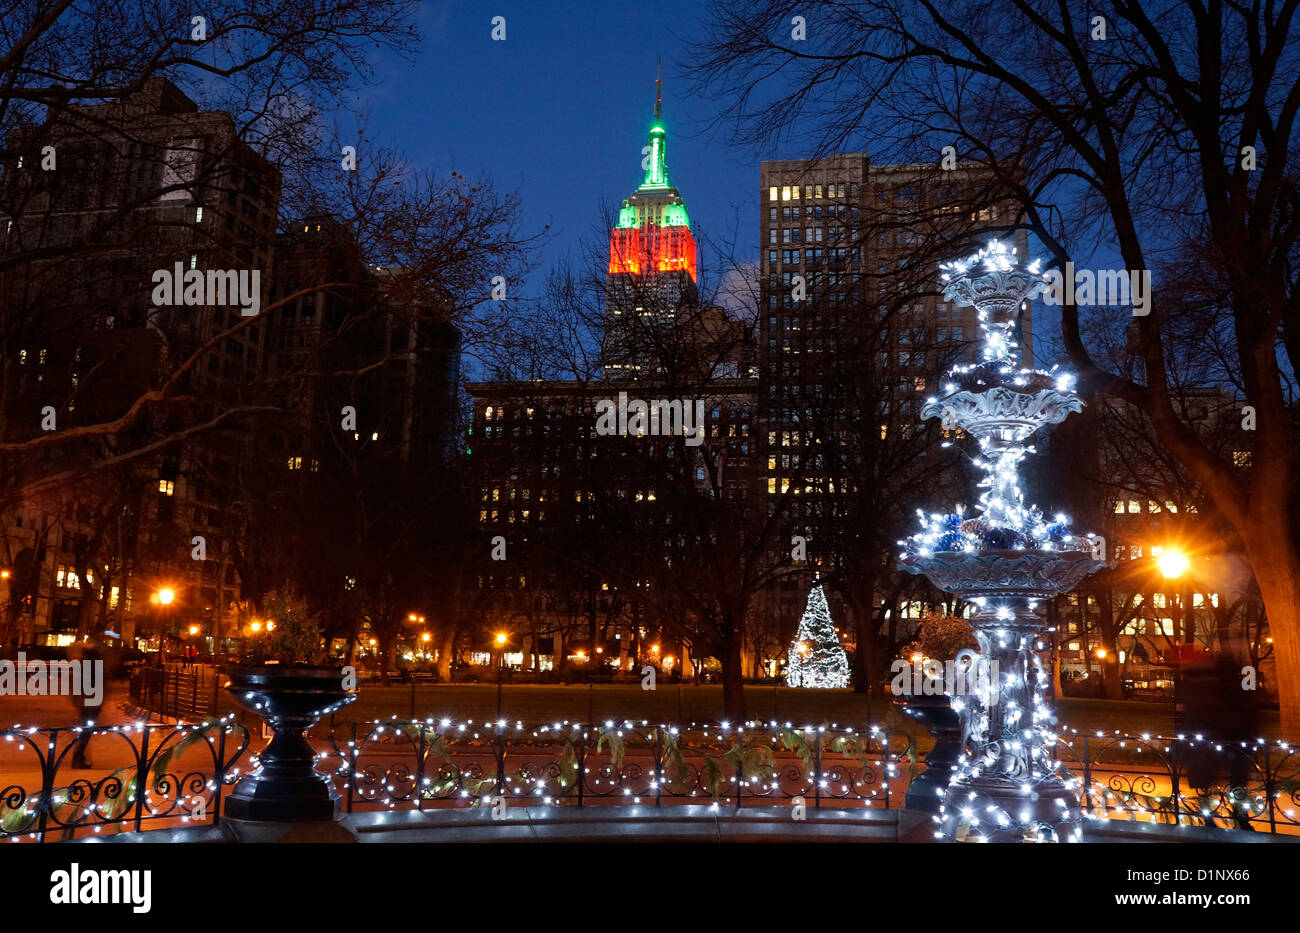 Fontaine dans le Madison Square Park à Noël, new york city, ny. empire state building en arrière-plan. Banque D'Images